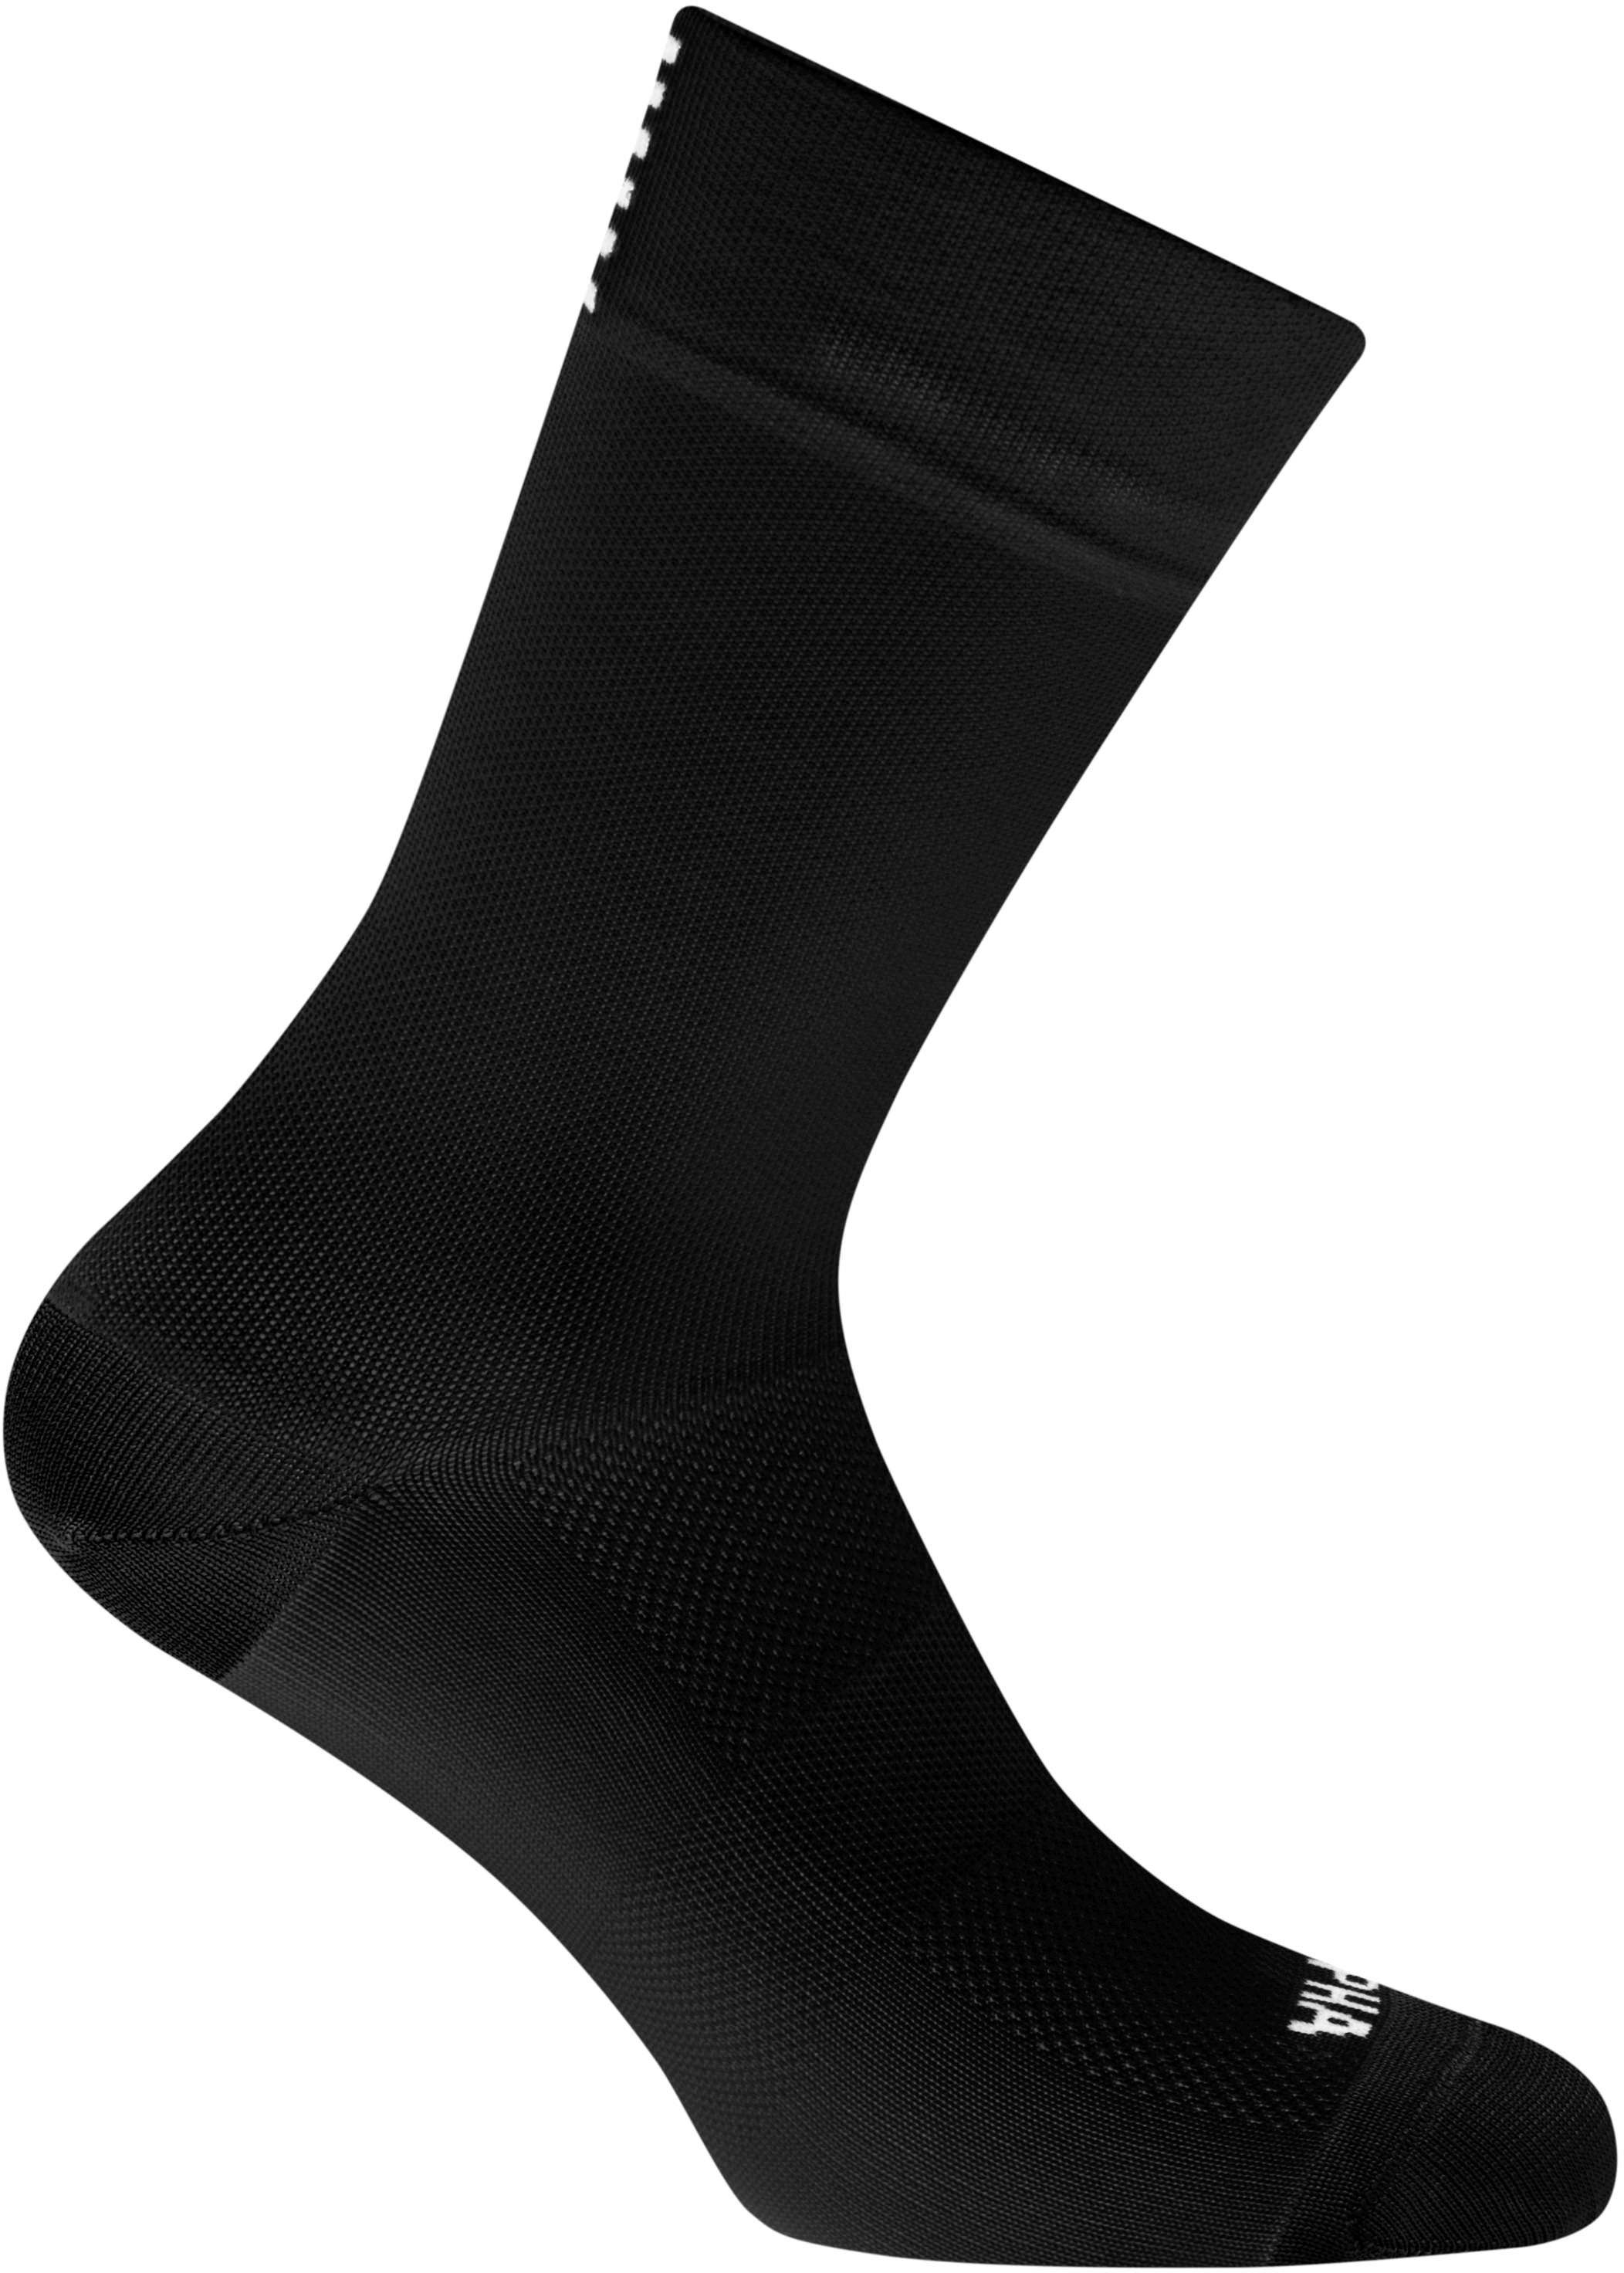 E-shop Rapha Pro Team Socks - Regular - Black/White 44-46